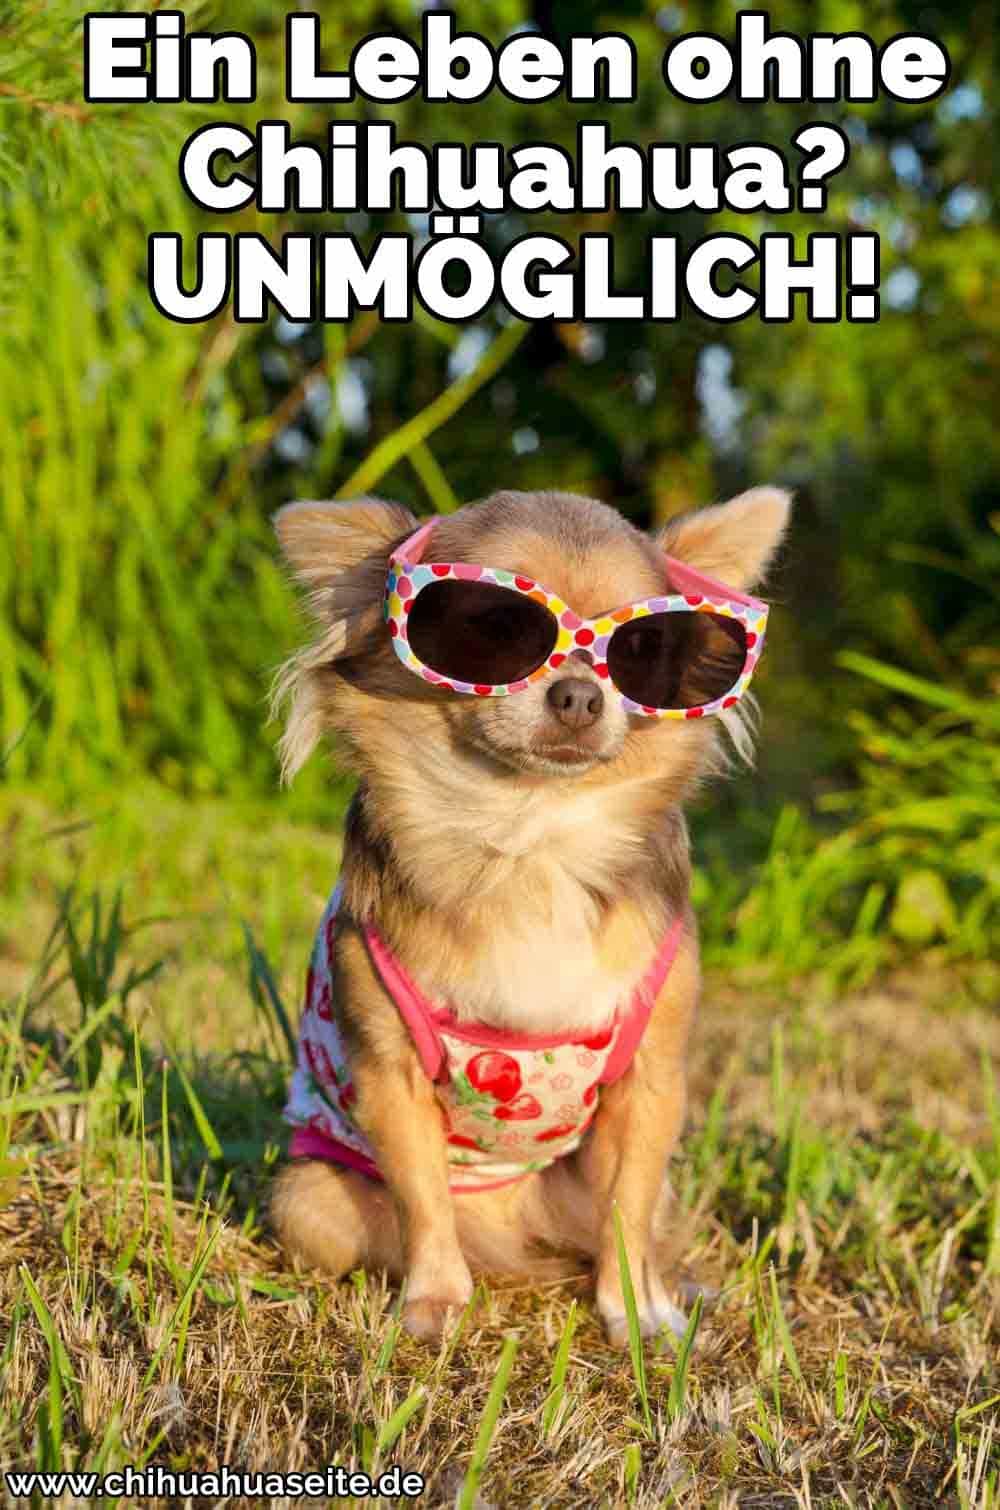 Ein Chihuahua trägt eine Sonnenbrille